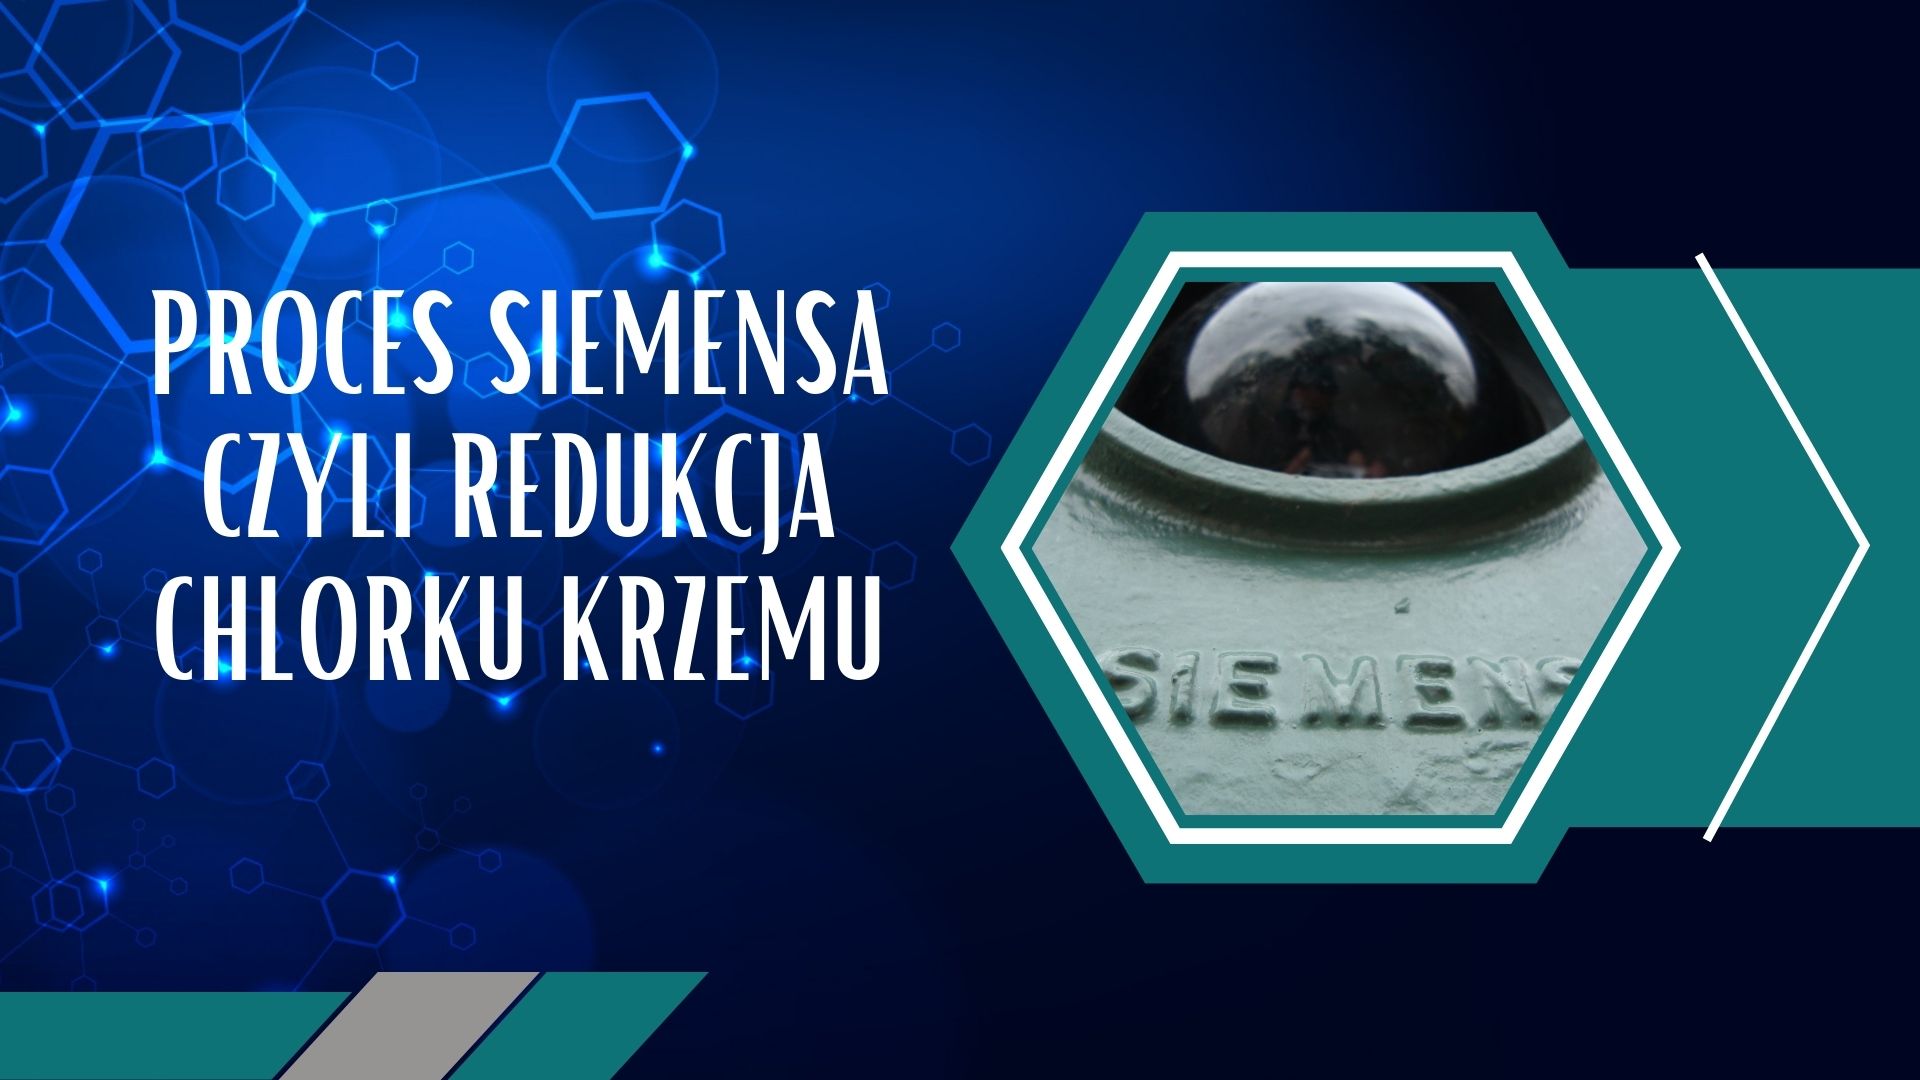 Proces Siemensa czyli redukcja chlorku krzemu